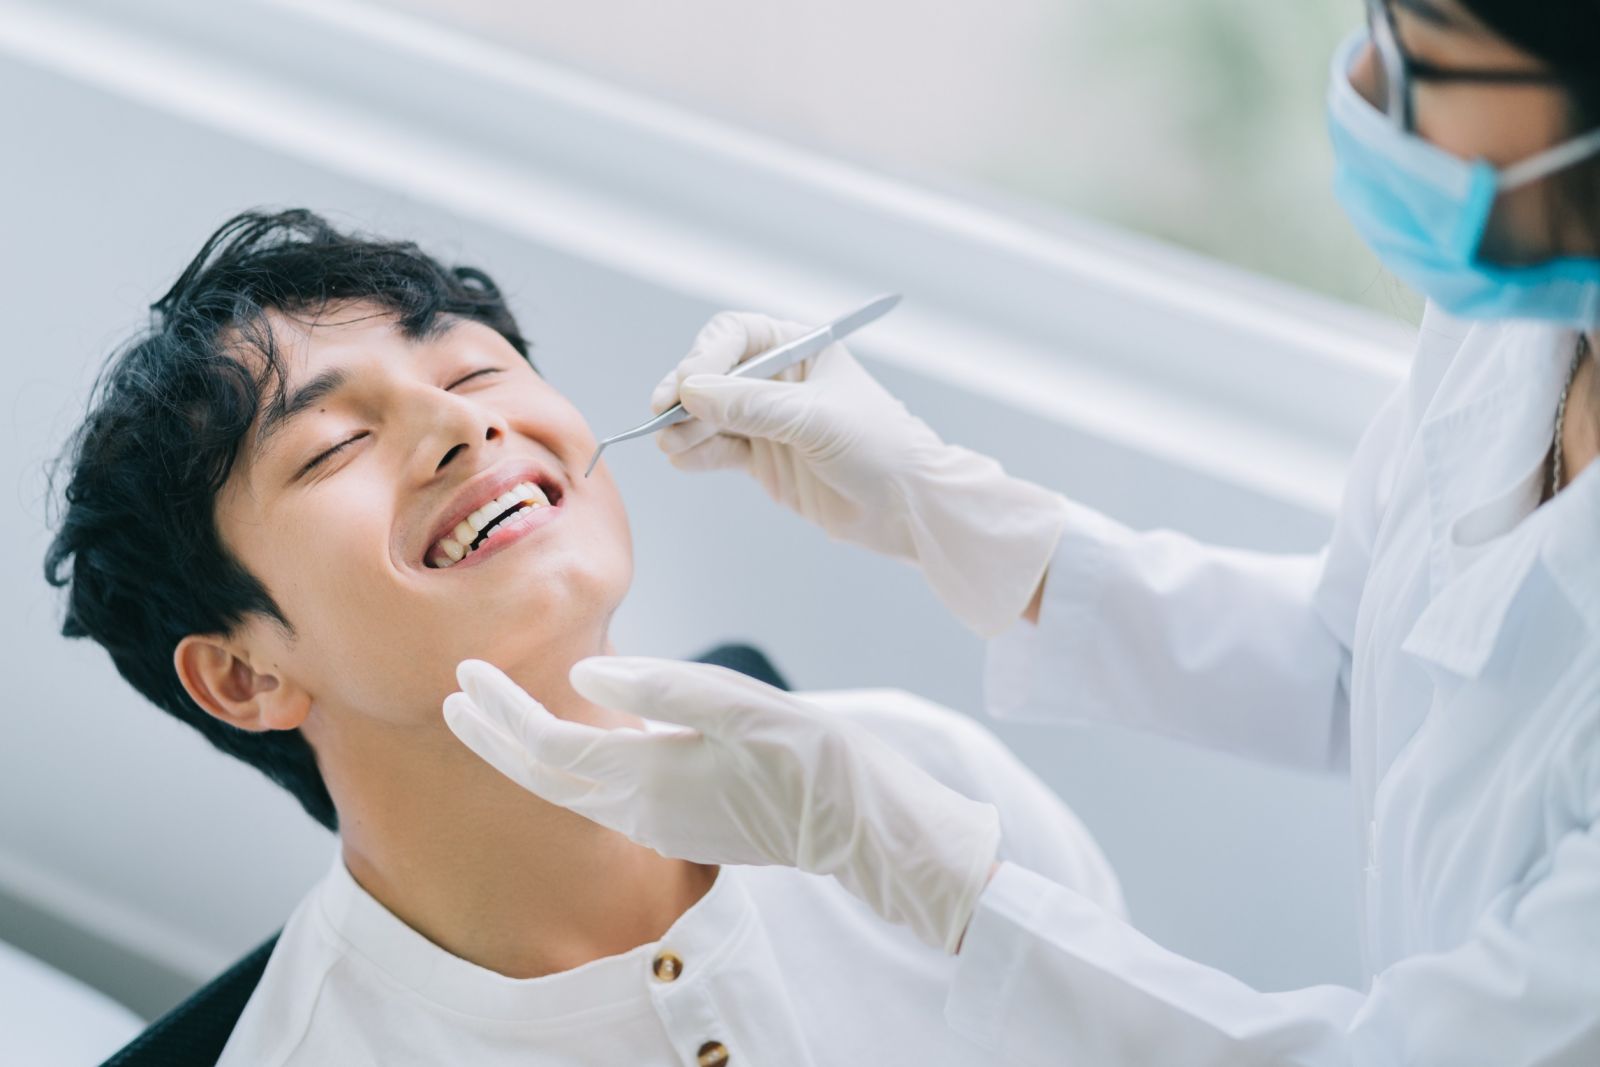 Sonrisas y Salud: CÃ³mo la PrevenciÃ³n Dental Puede Impactar tu Bienestar General